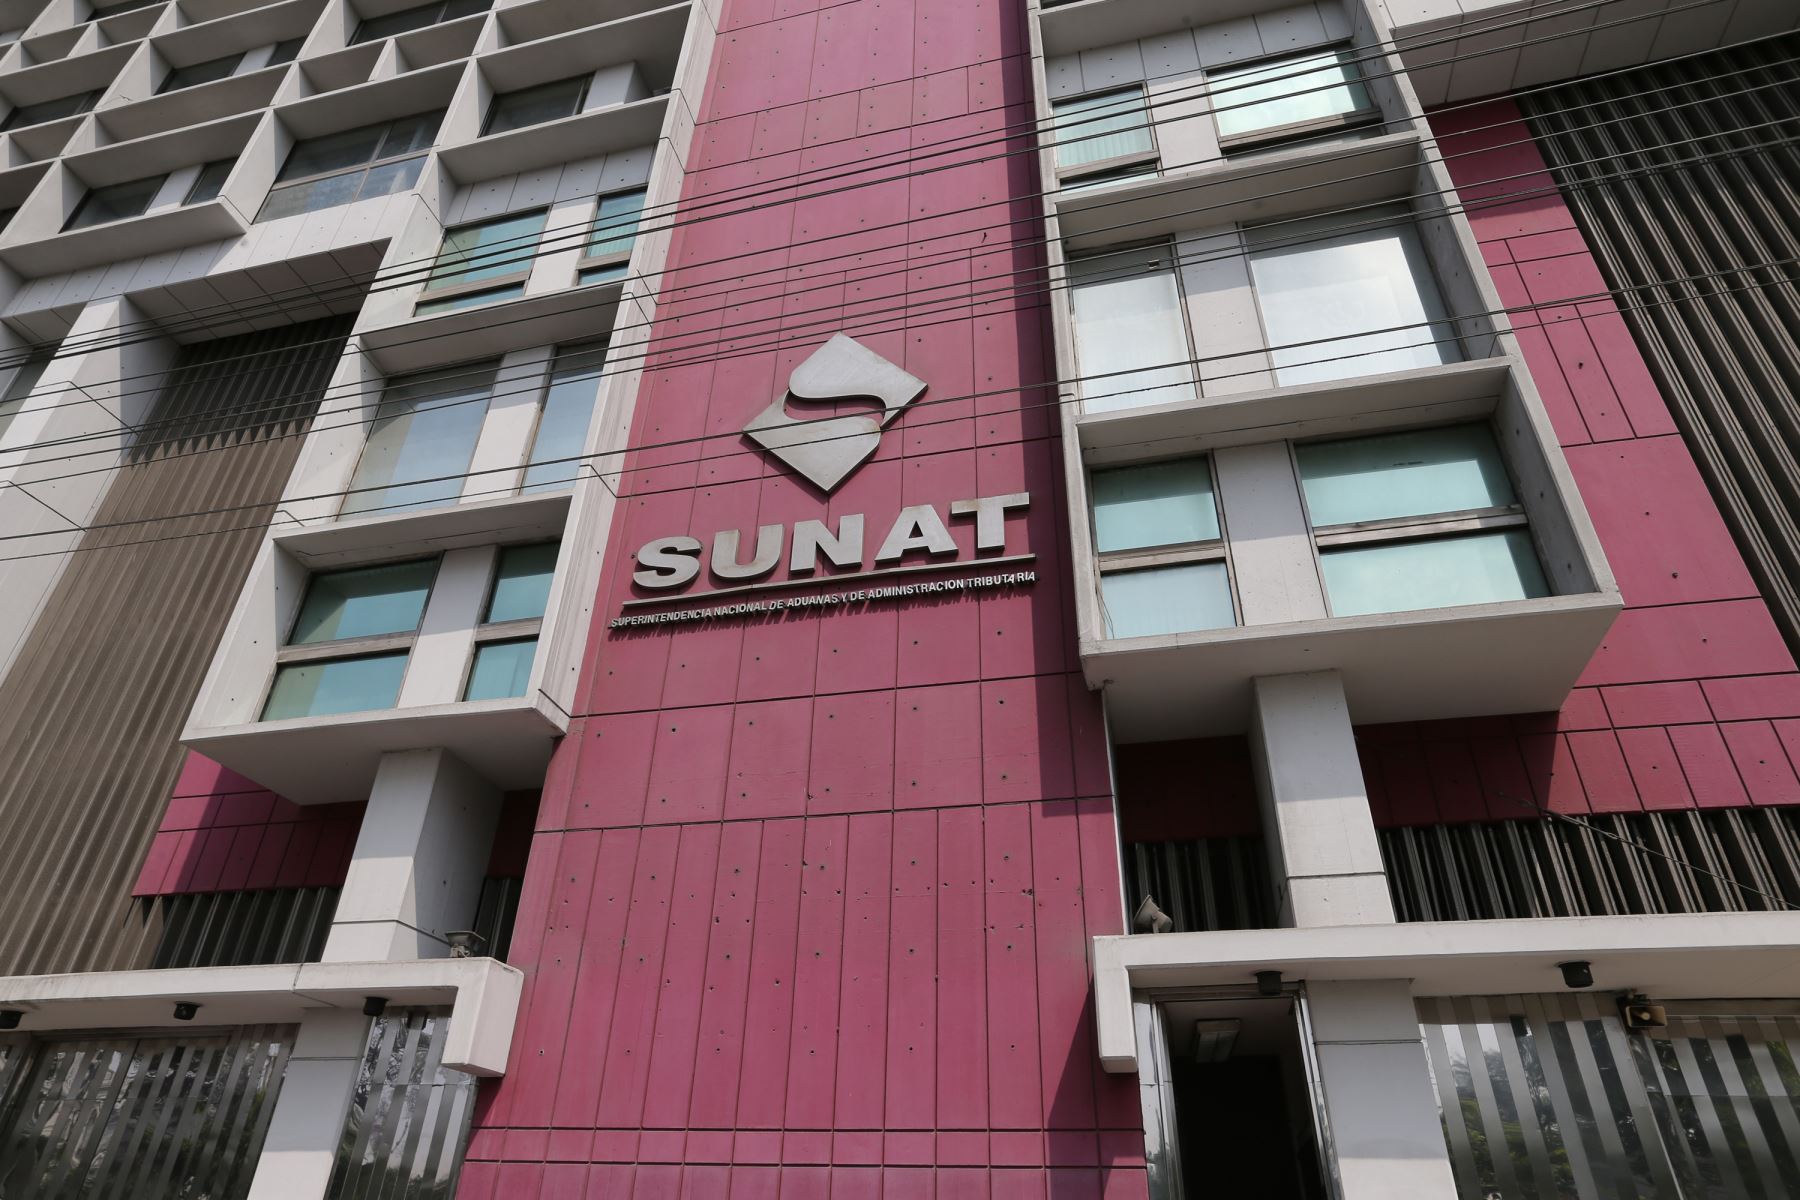 El programa de certificación de la Sunat otorga a los operadores facilidades para el control de carga, simplificación de trámites y atención personalizada en Aduanas.